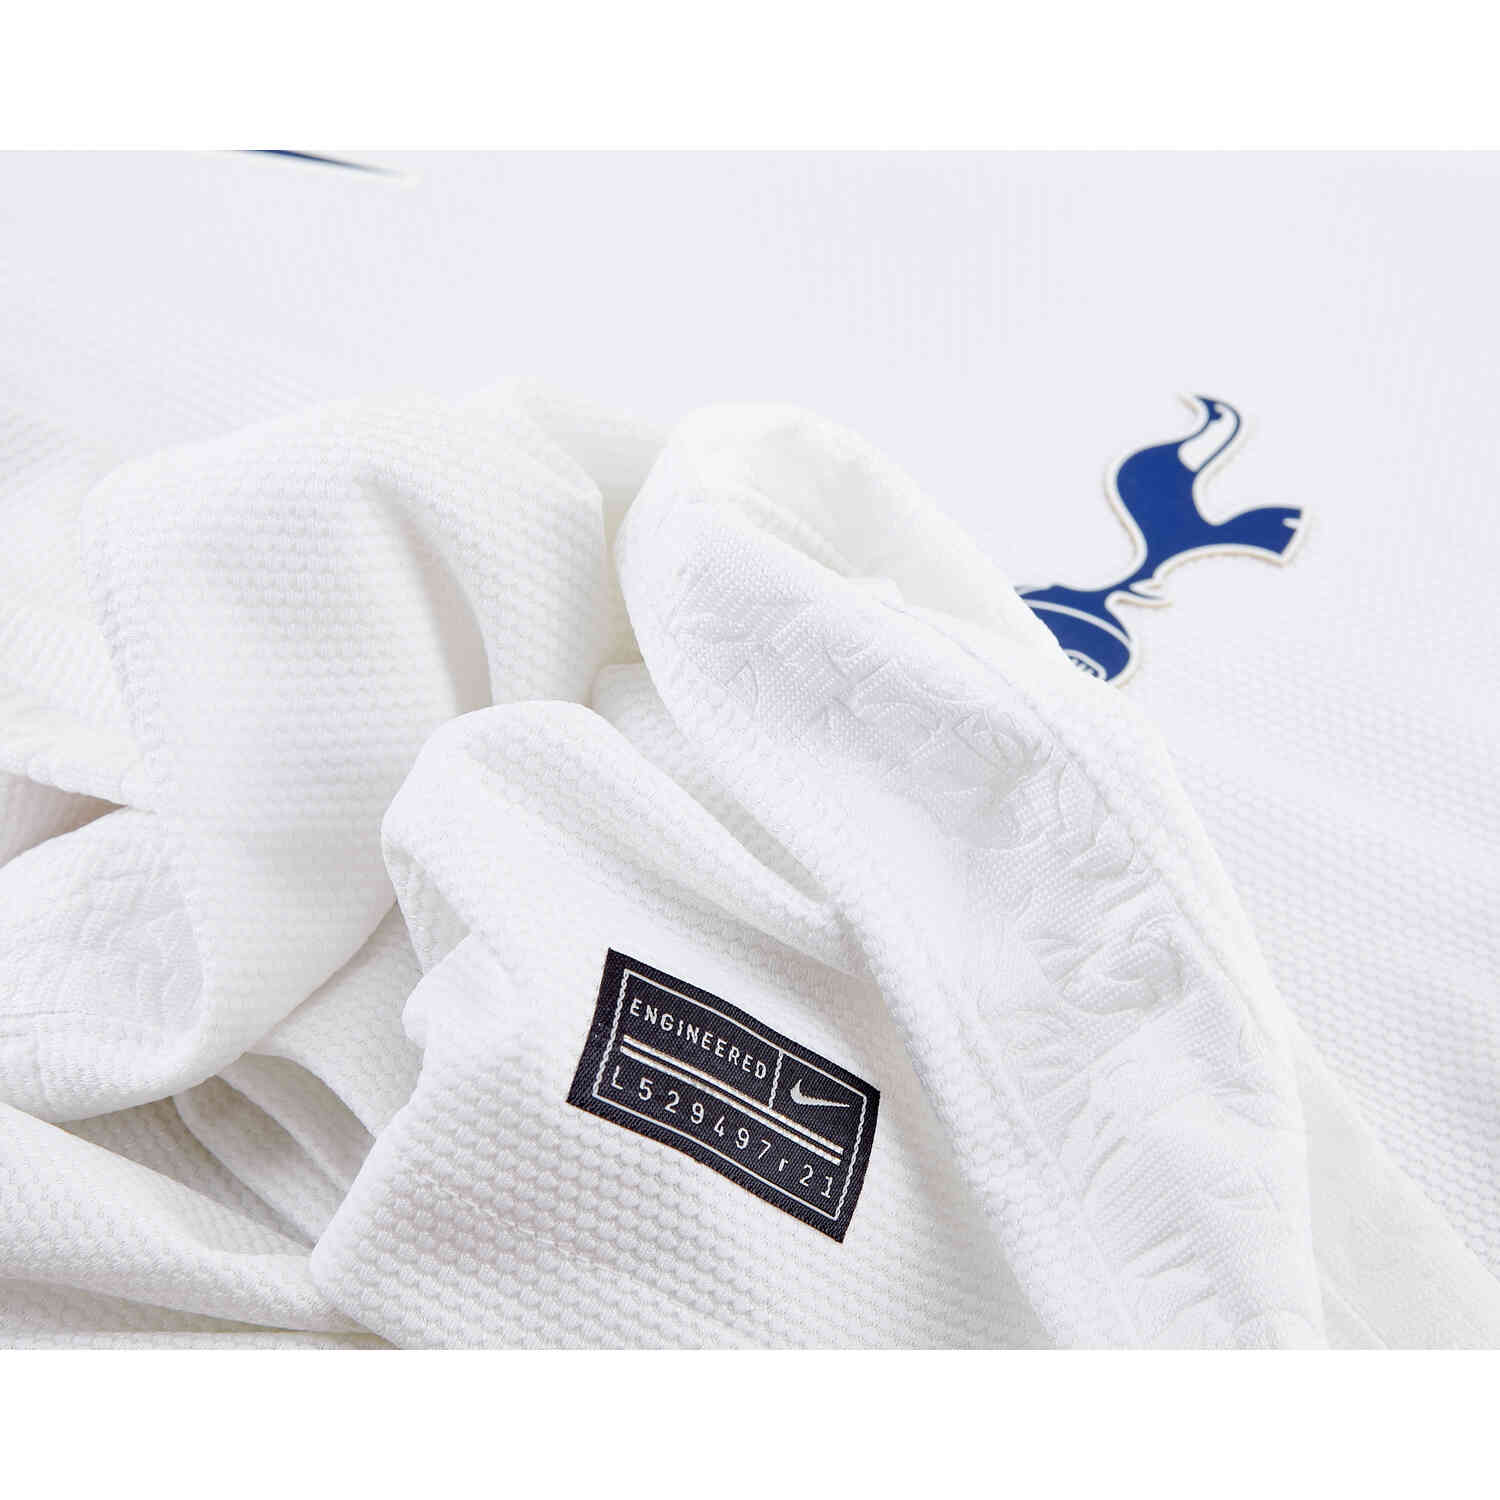 2021/22 Kids Nike Harry Kane Tottenham Home Jersey - SoccerPro